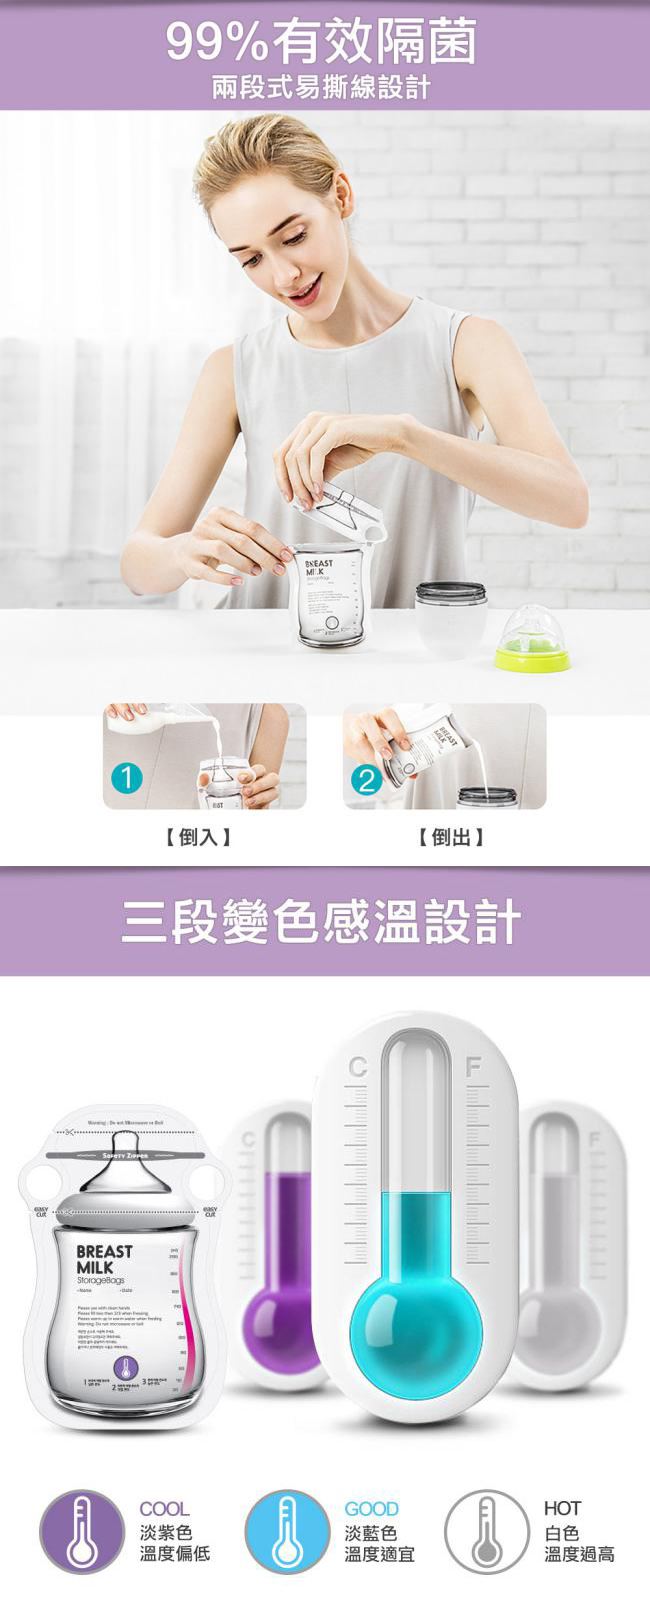 韓國BAILEY貝睿 感溫母乳儲存袋-指孔型60入(3盒)